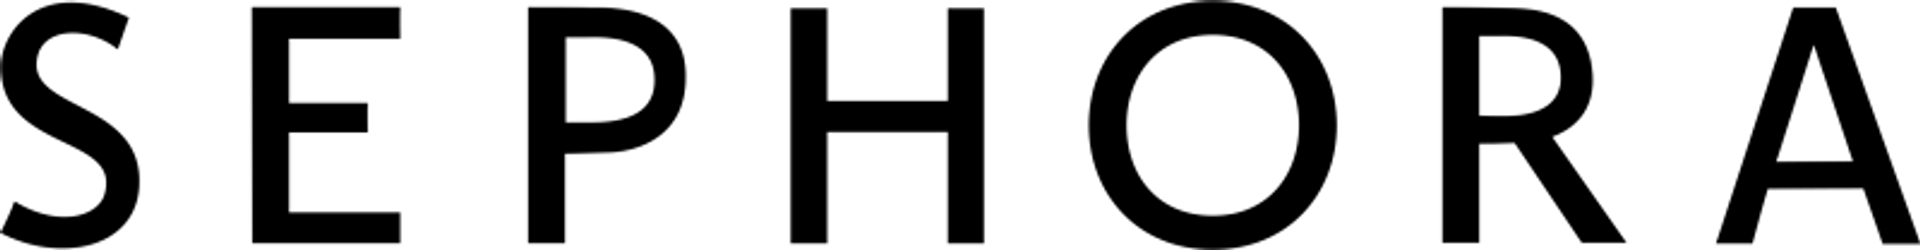 Sephora logo de folhetos